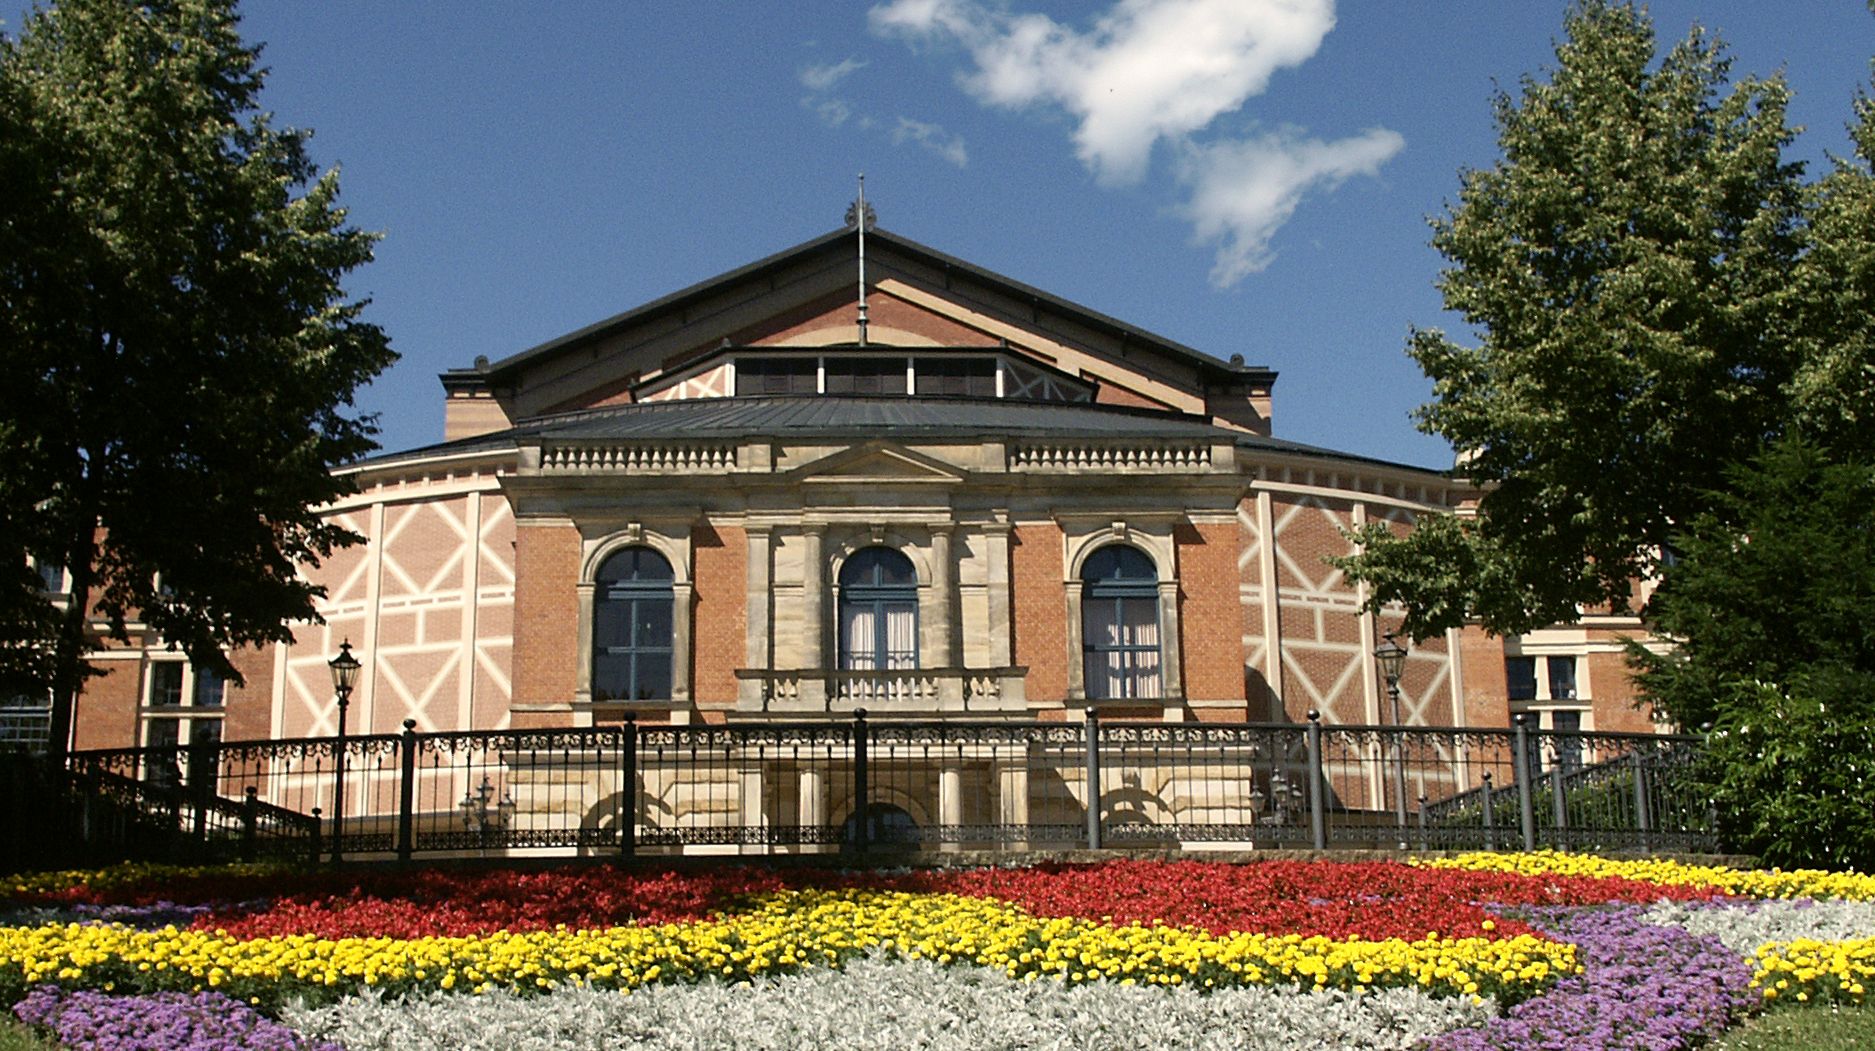 Festspielhaus Bayreuth hinter einem Blumenbeet